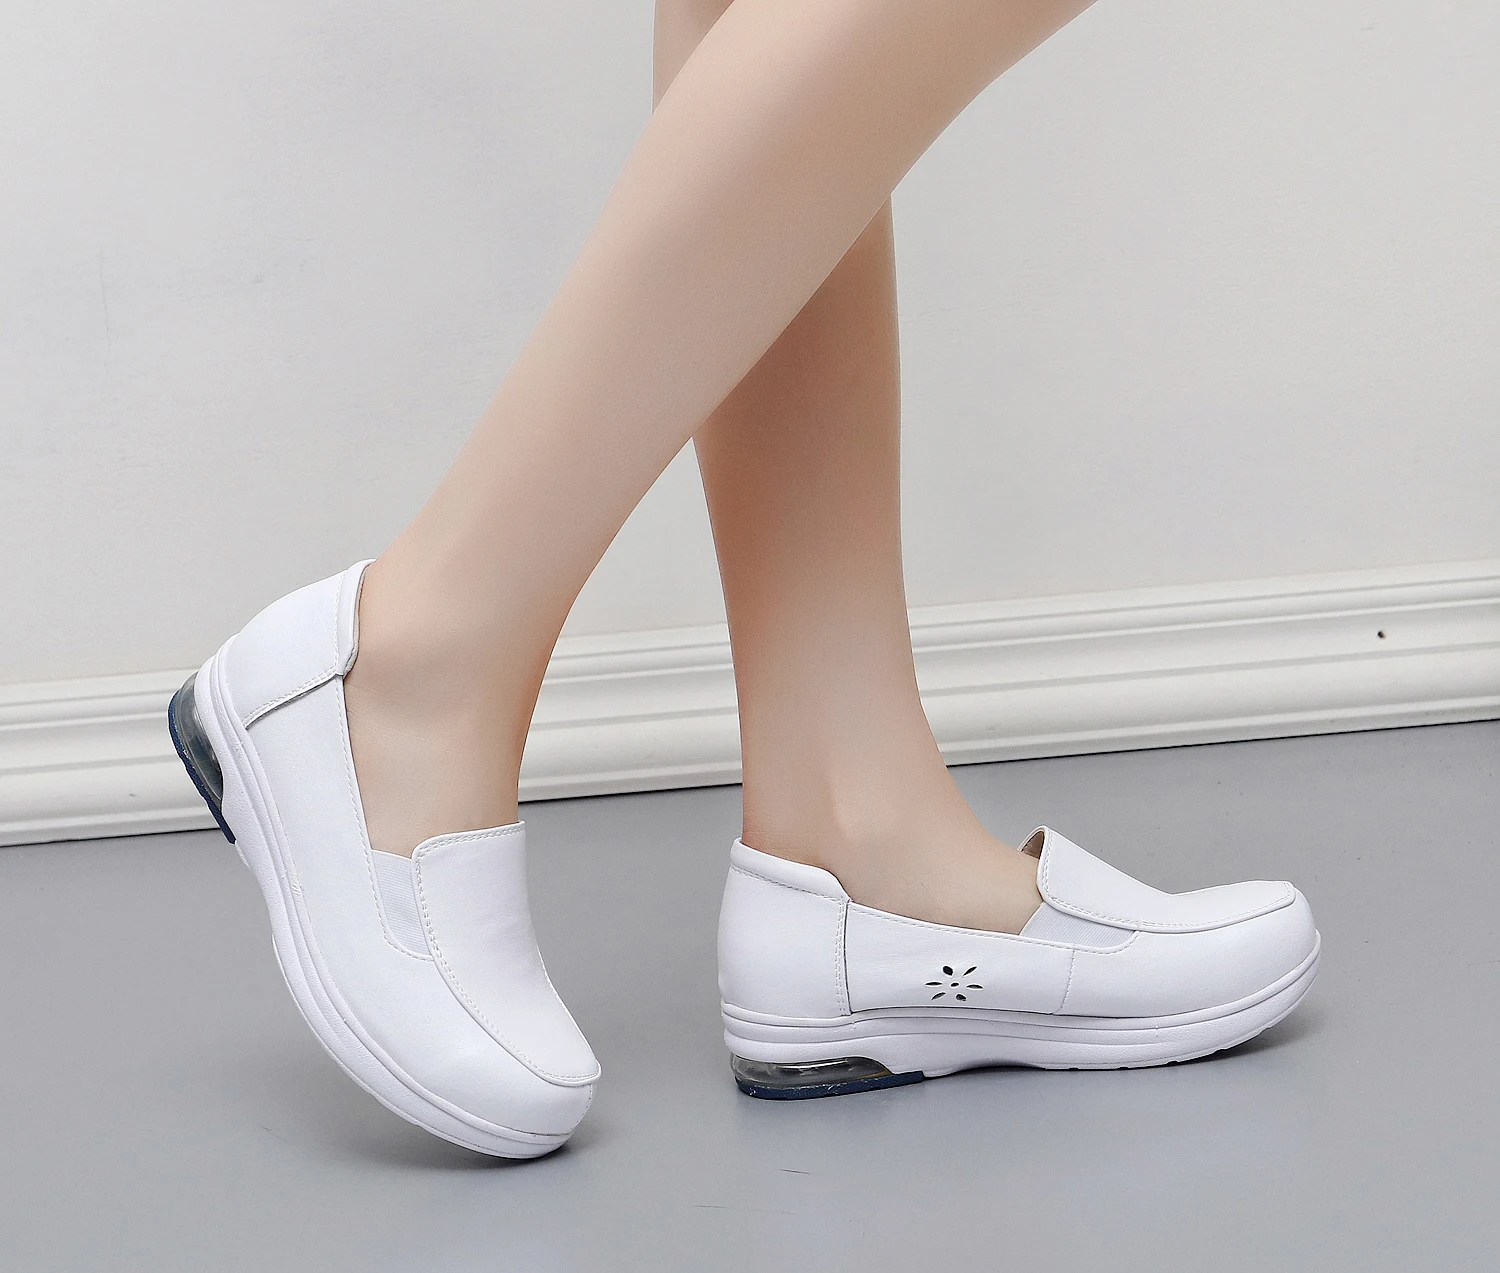 fotos de sapato branco feminino